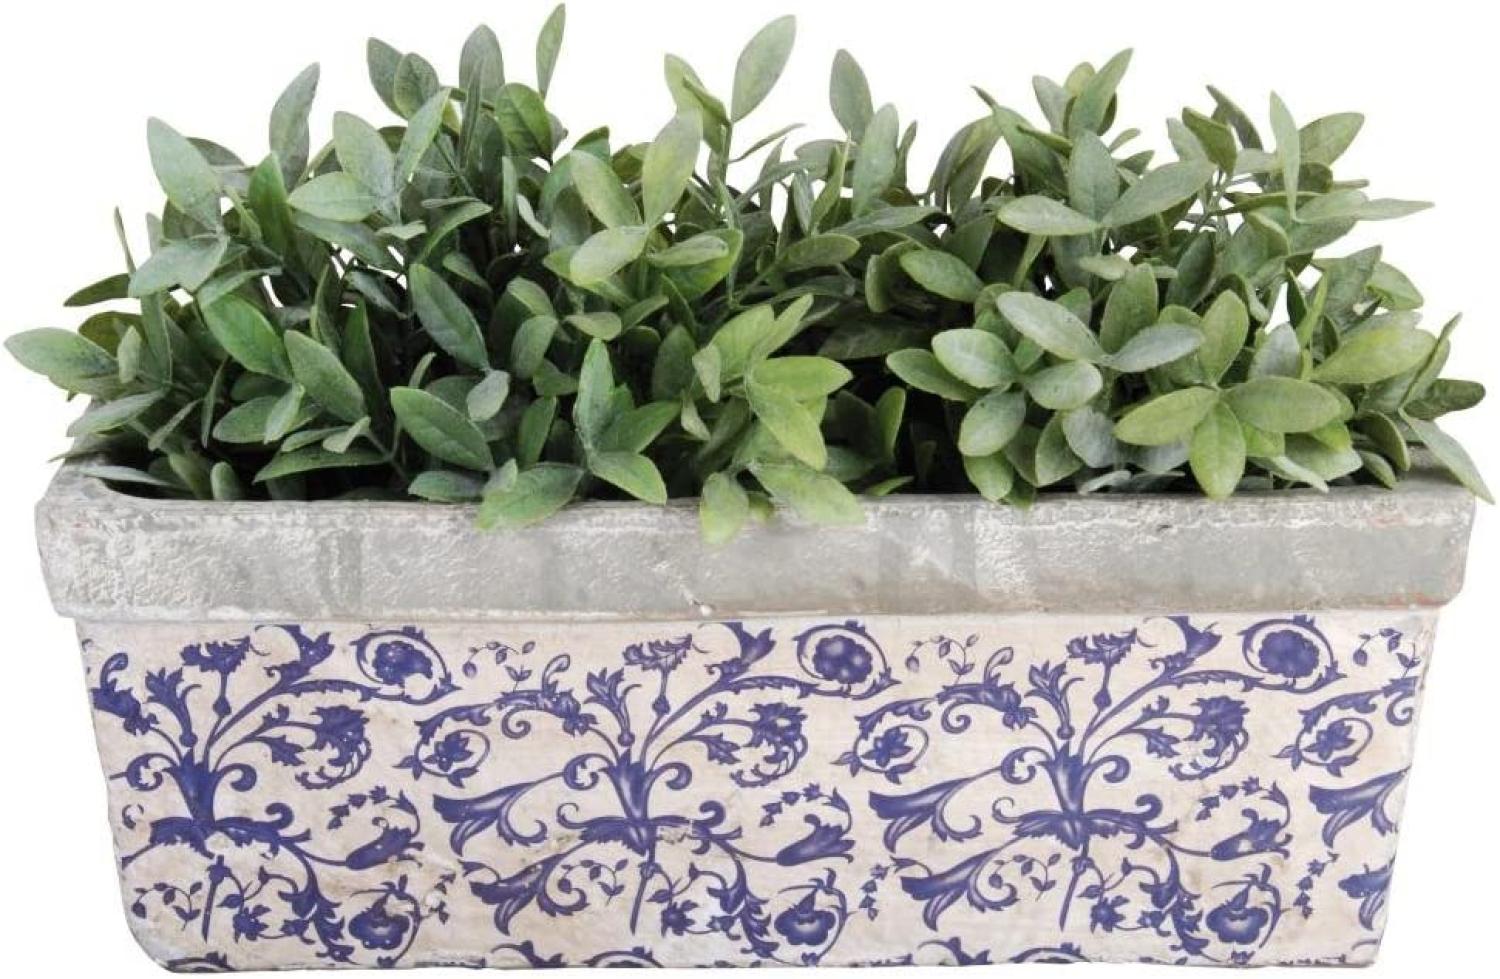 2 Stück Esschert Design Balkonkasten, Blumenkasten aus Keramik in blau-weiß, ca. 40 cm x 16 cm x 15 cm Bild 1